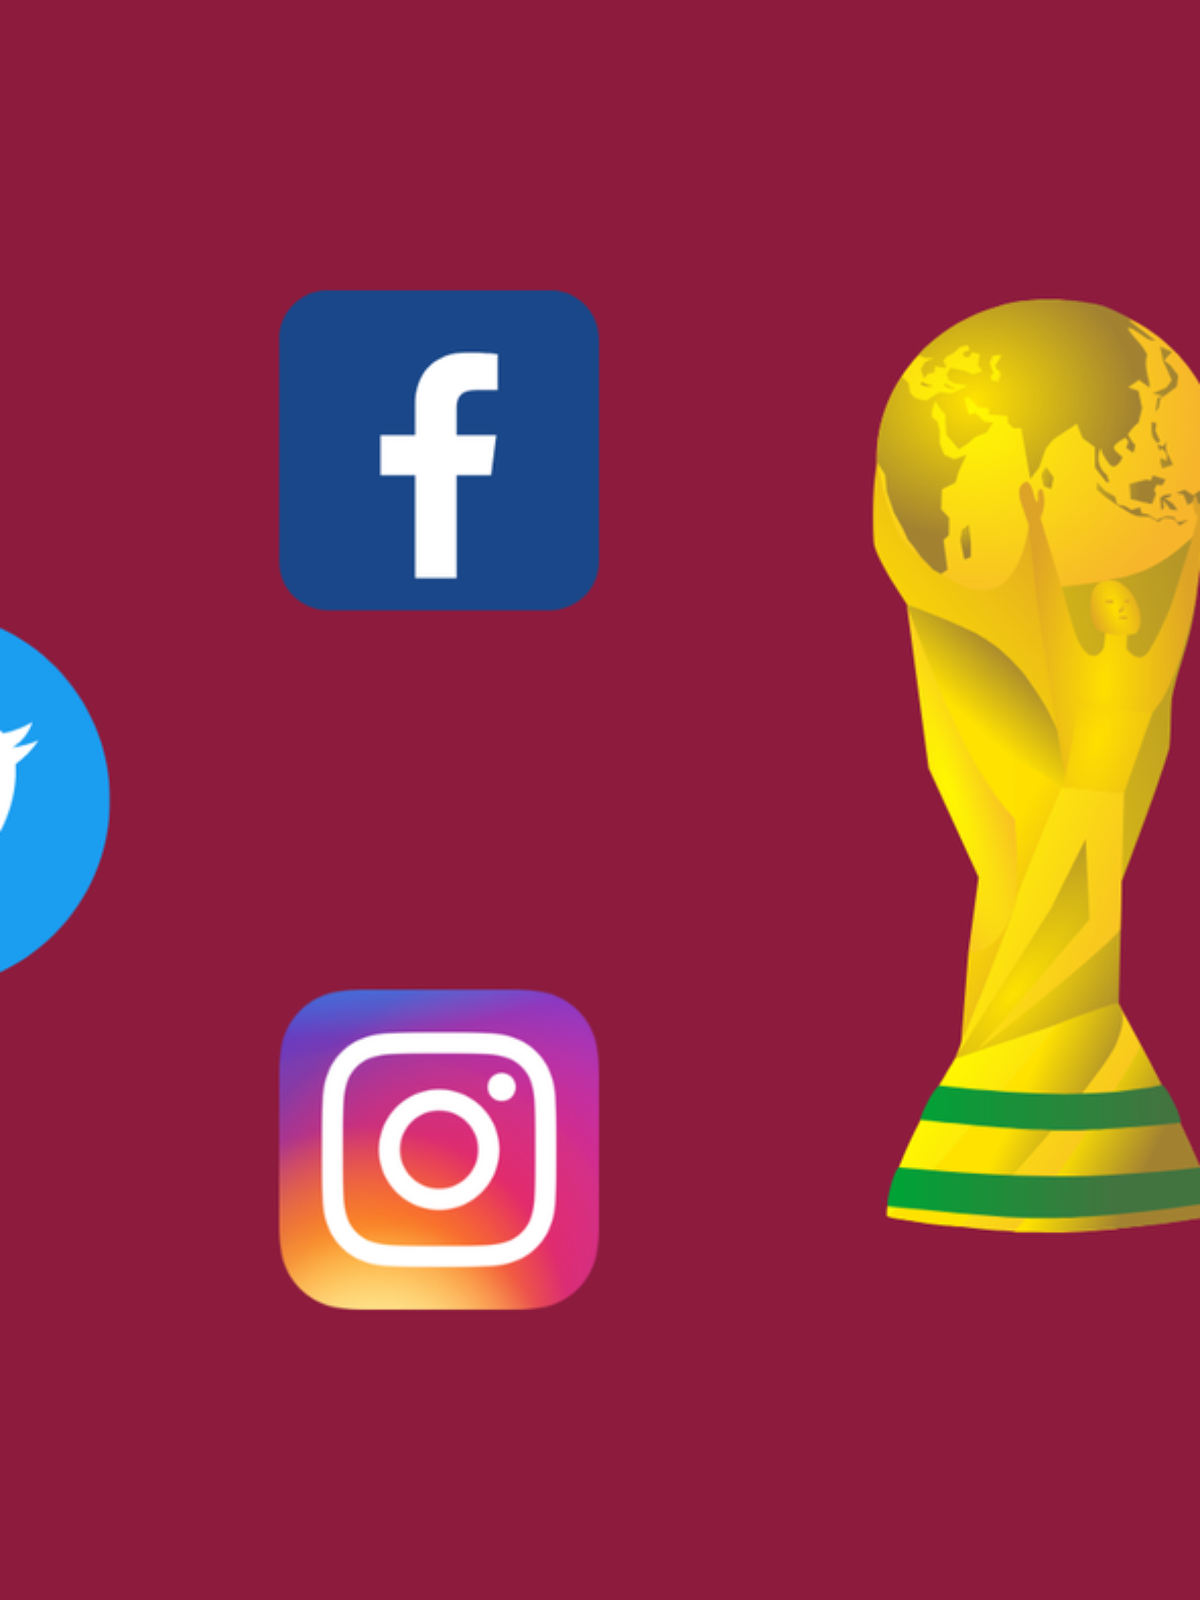 Futebol mundial 2022 grupo g bandeiras dos países participantes do